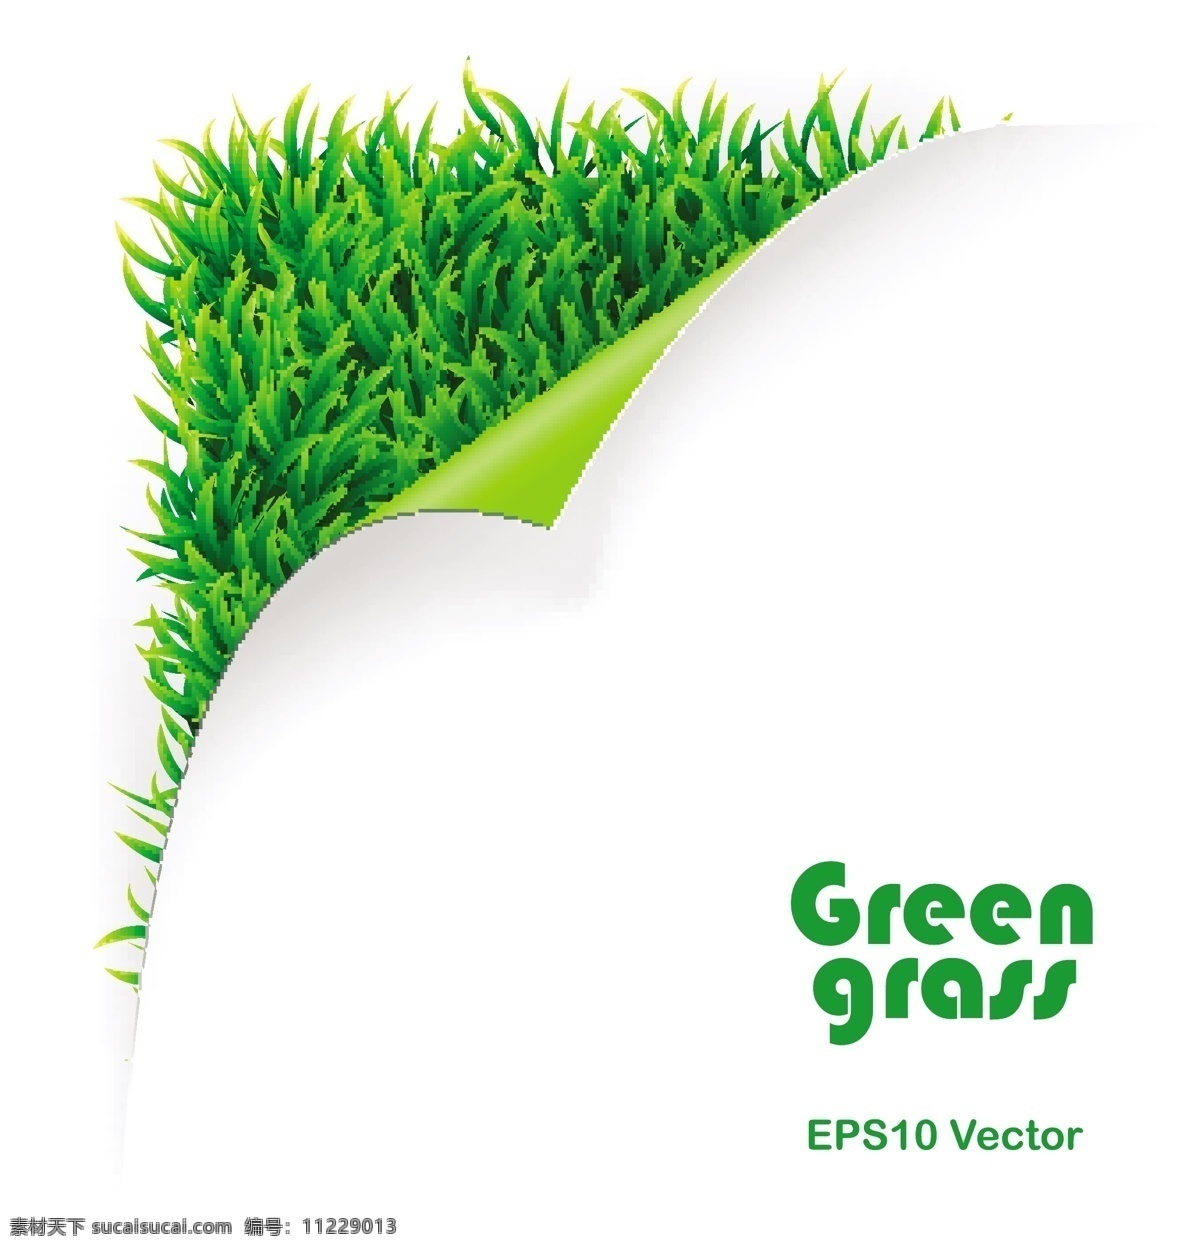 草绿色 绿色 草绿色的草3 草 免费 矢量 绿草3向量 绿 向量 绿色的草向量 矢量图 其他矢量图